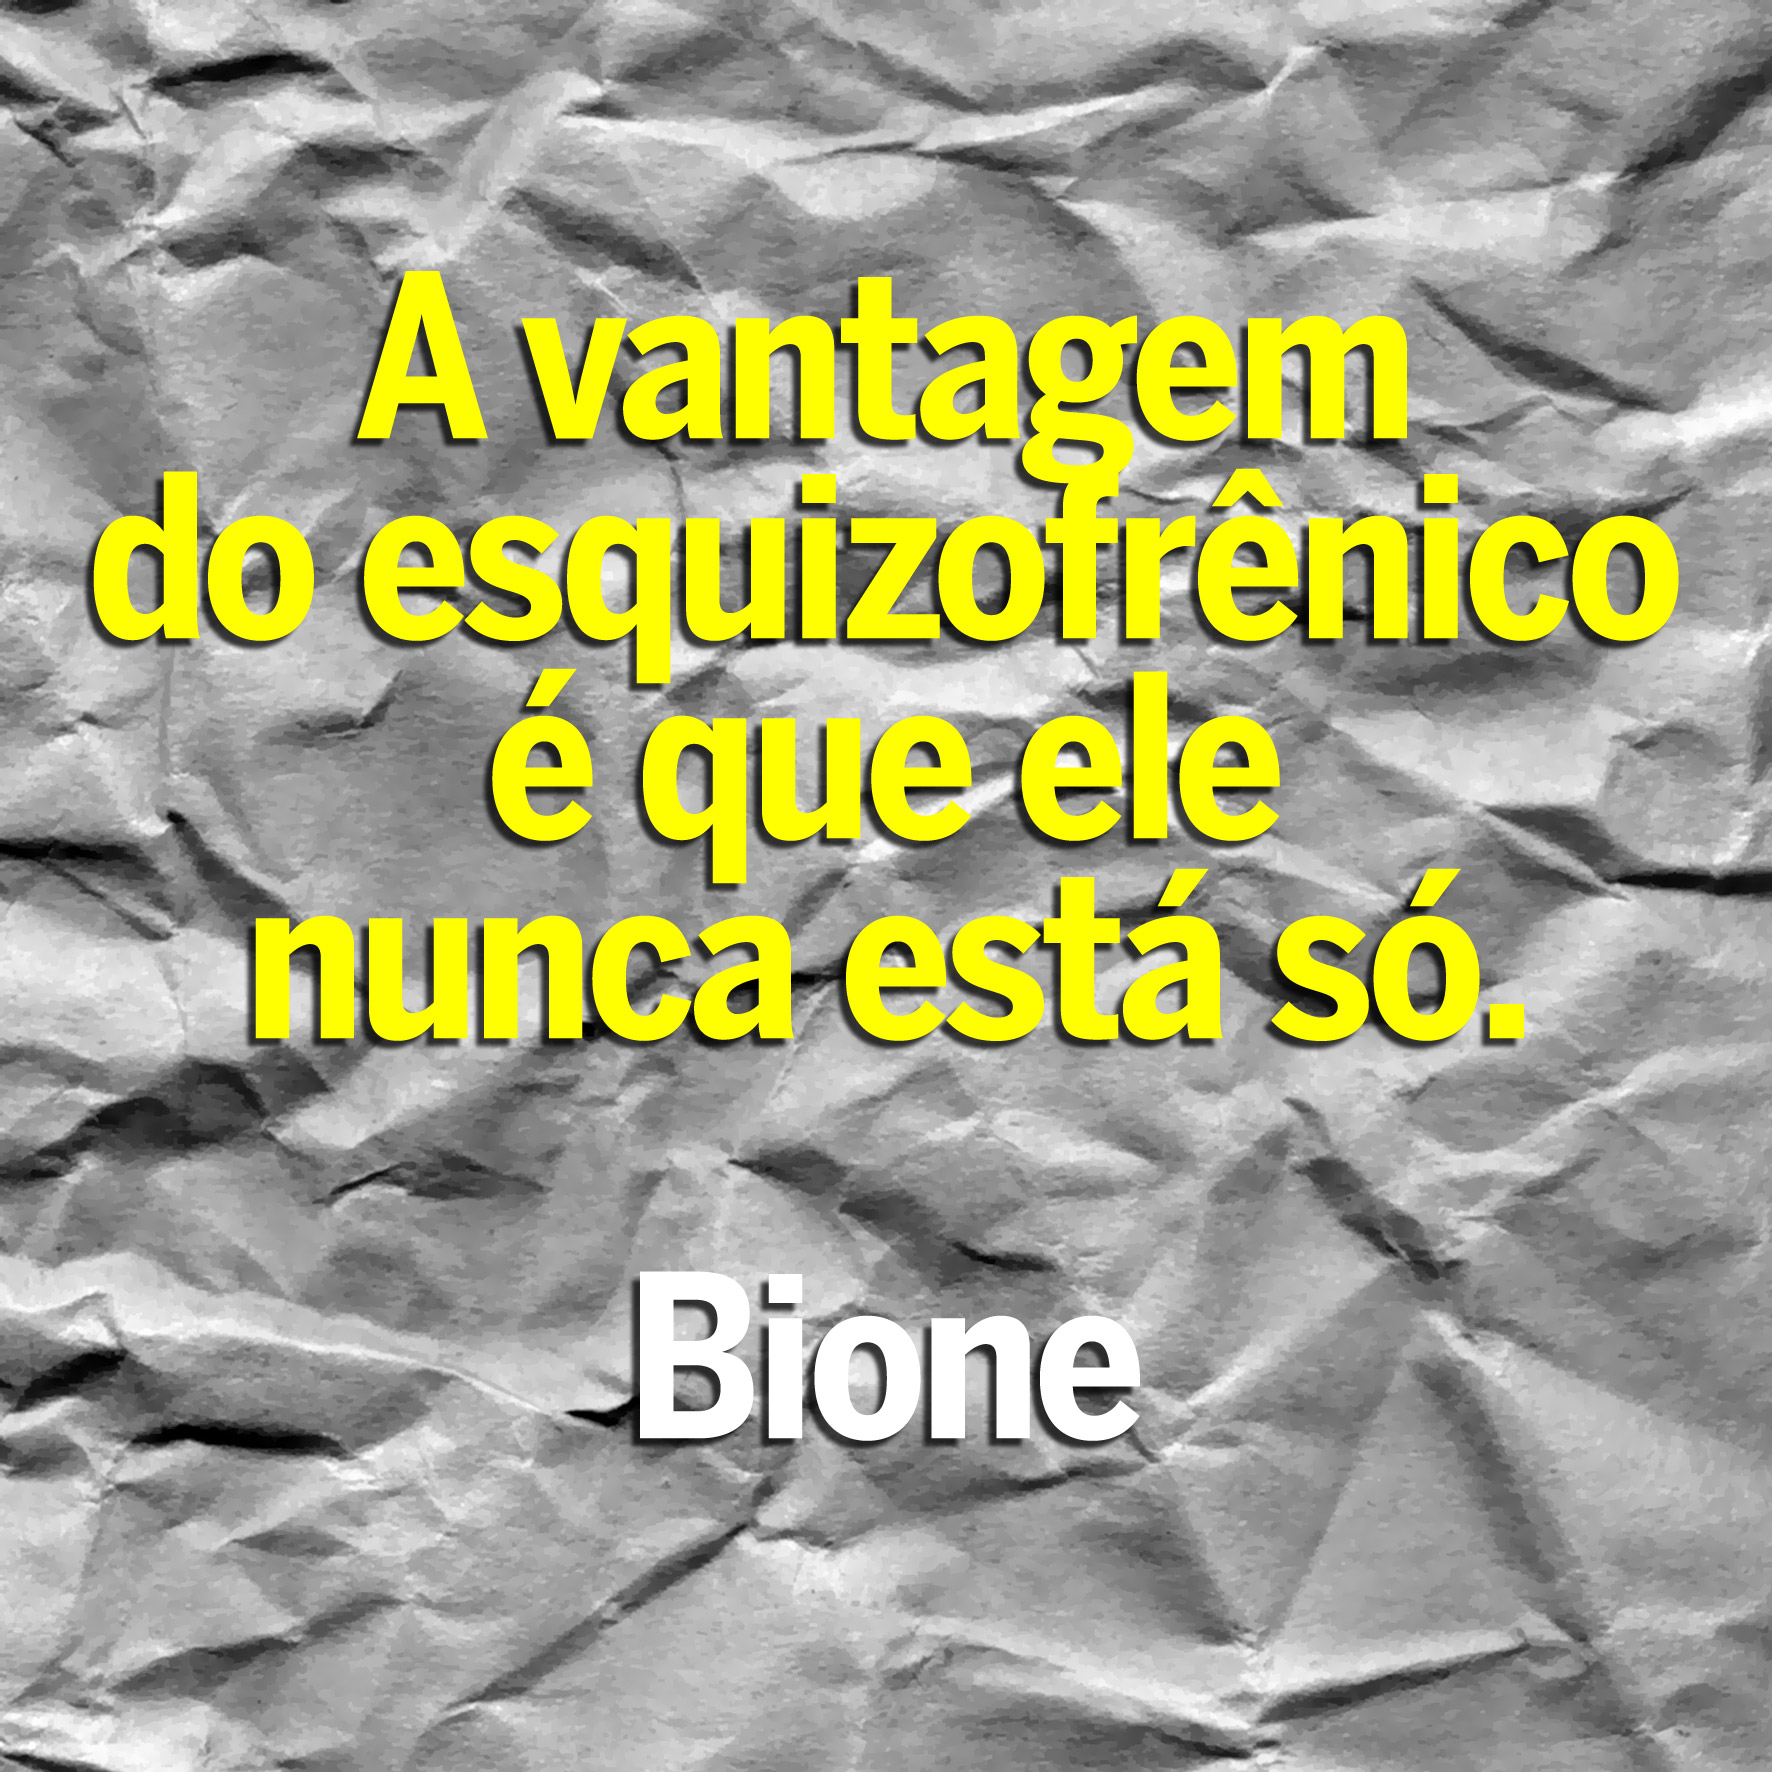 bione-2